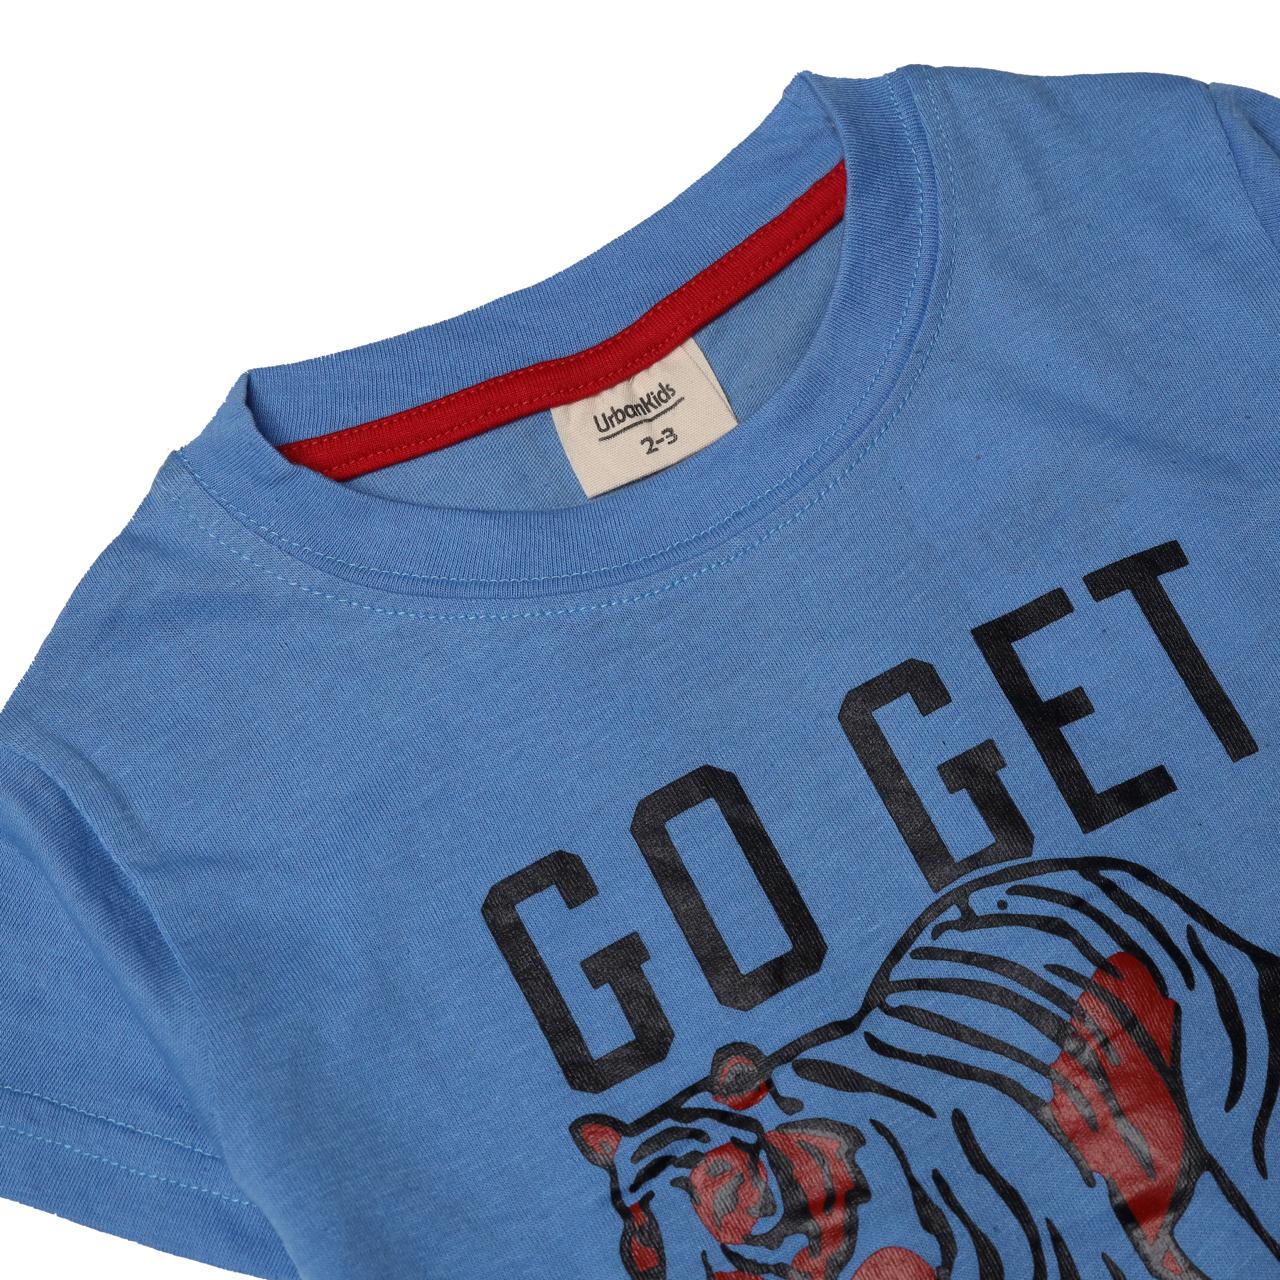 Blue "Go Get 'Em Tiger" T-Shirt